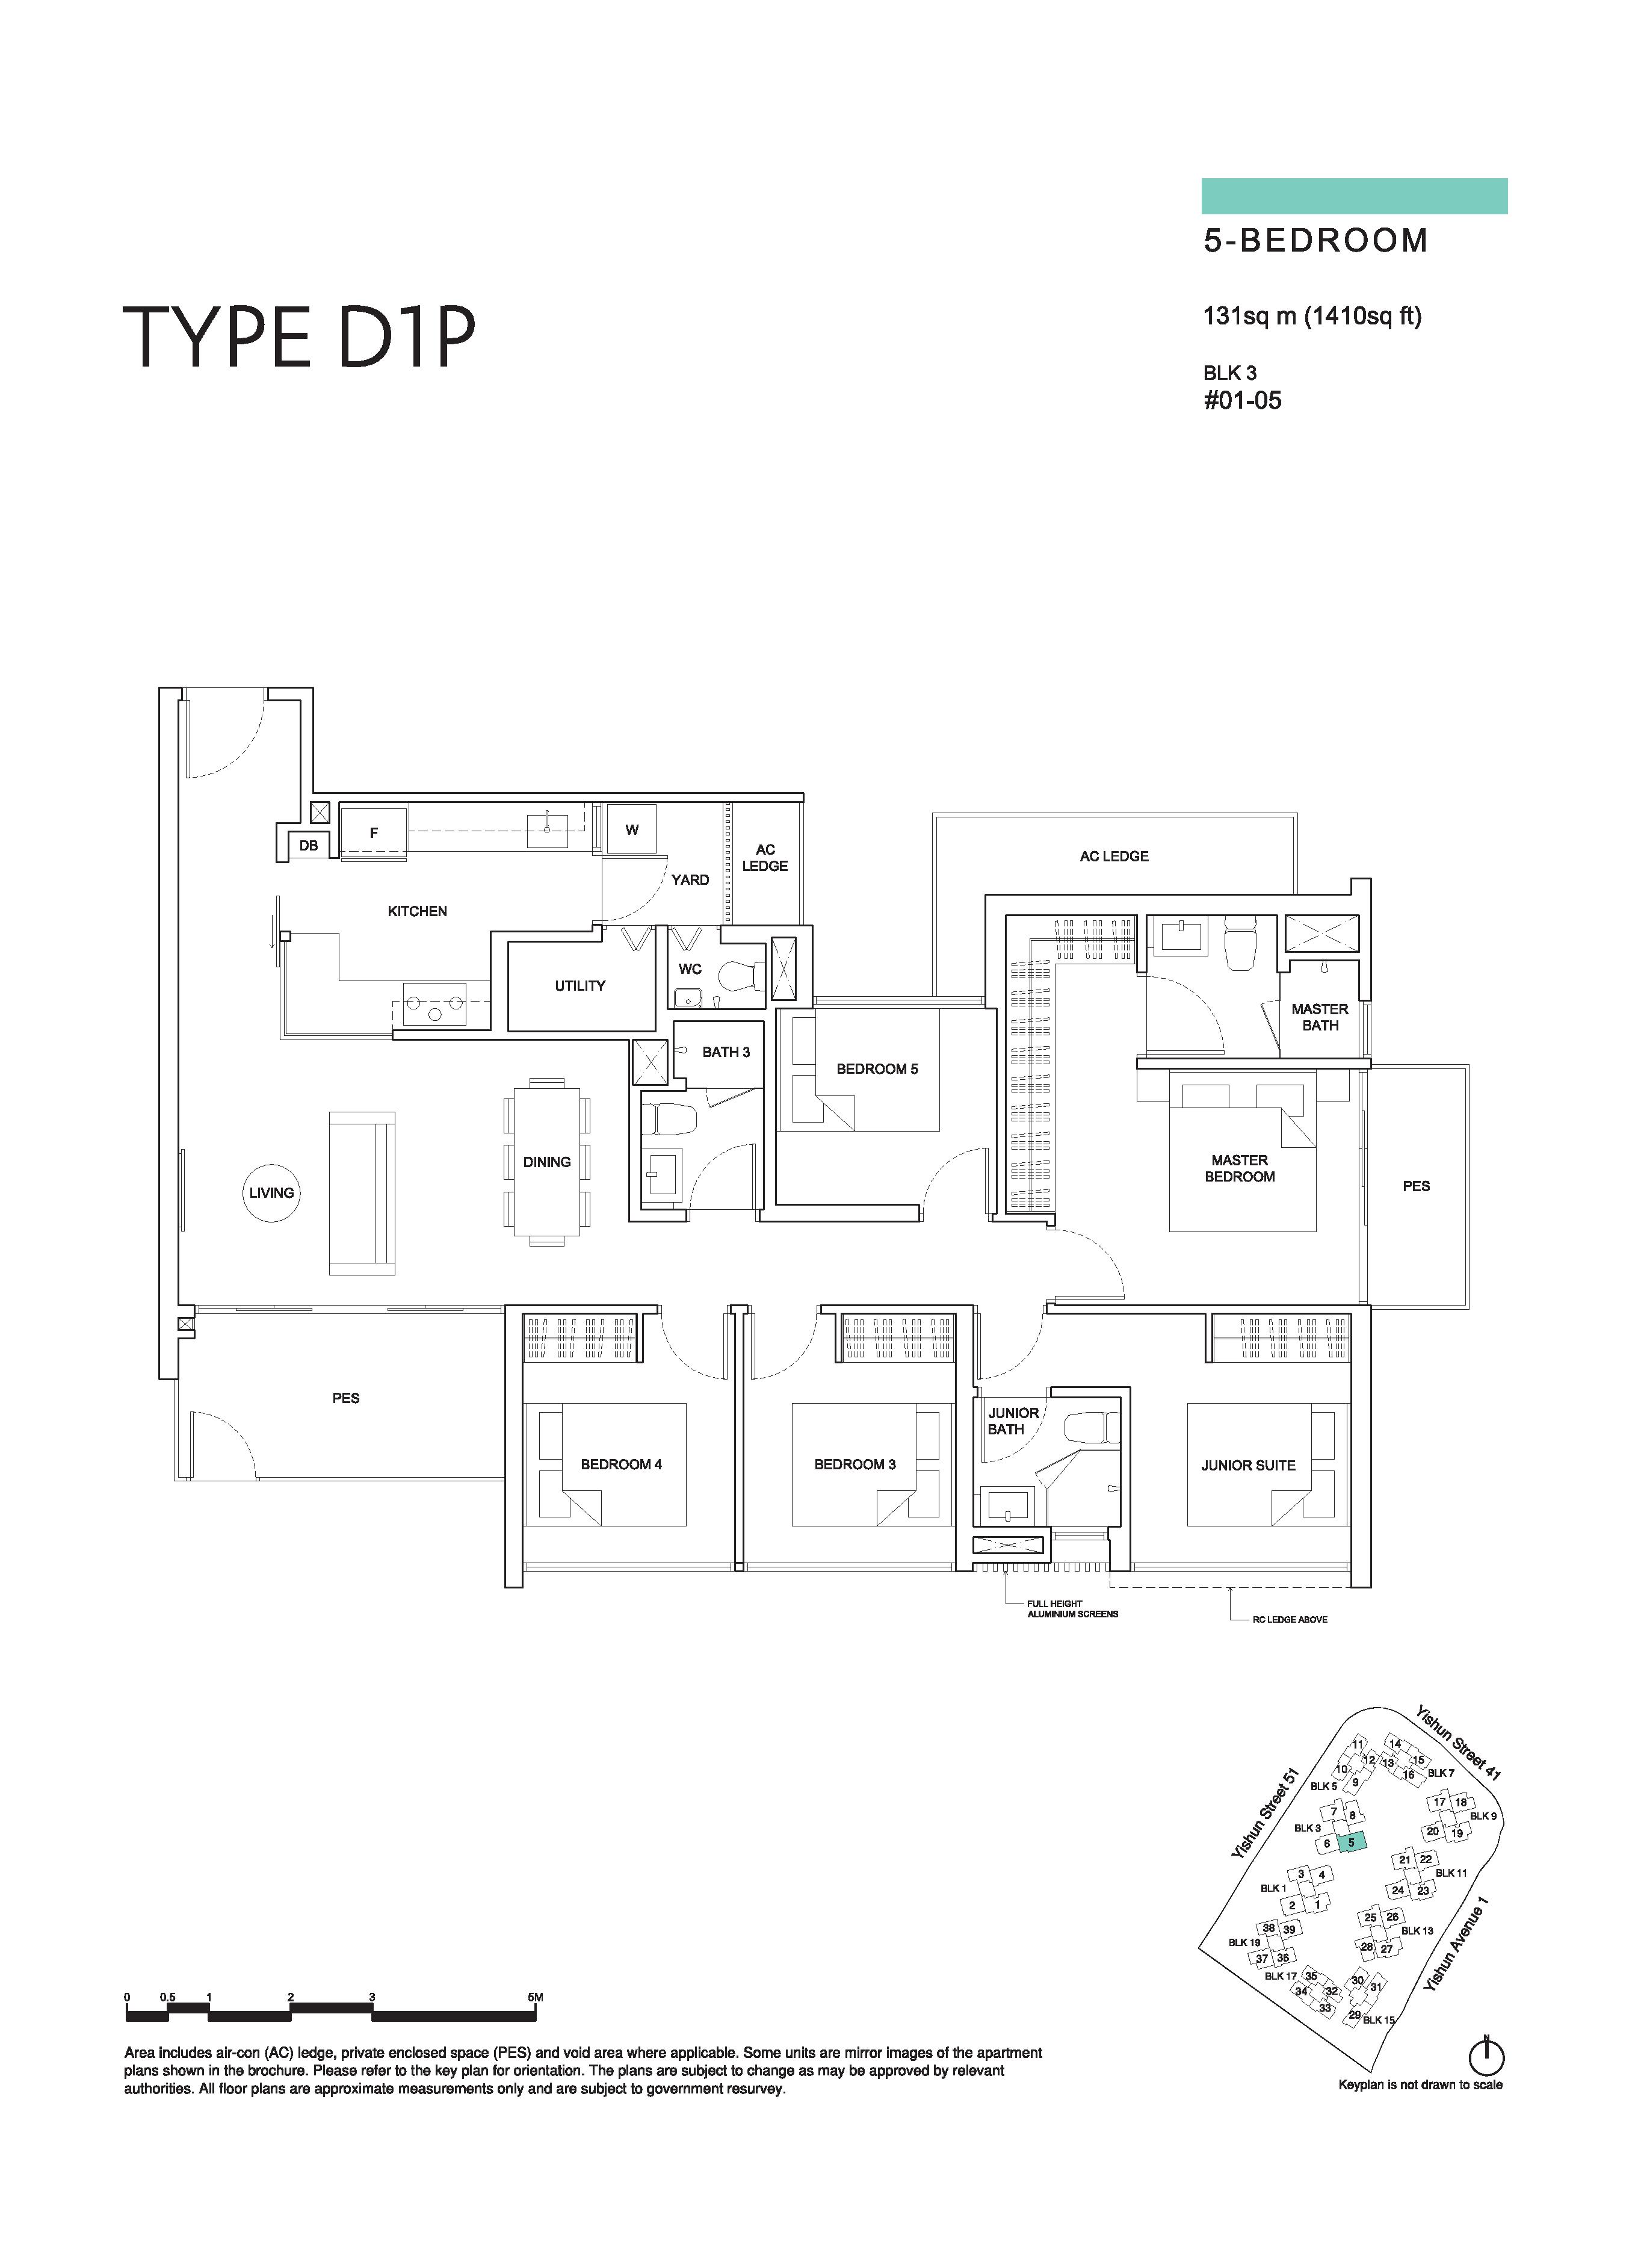 The Criterion 5 Bedroom Floor Plan Type D1P